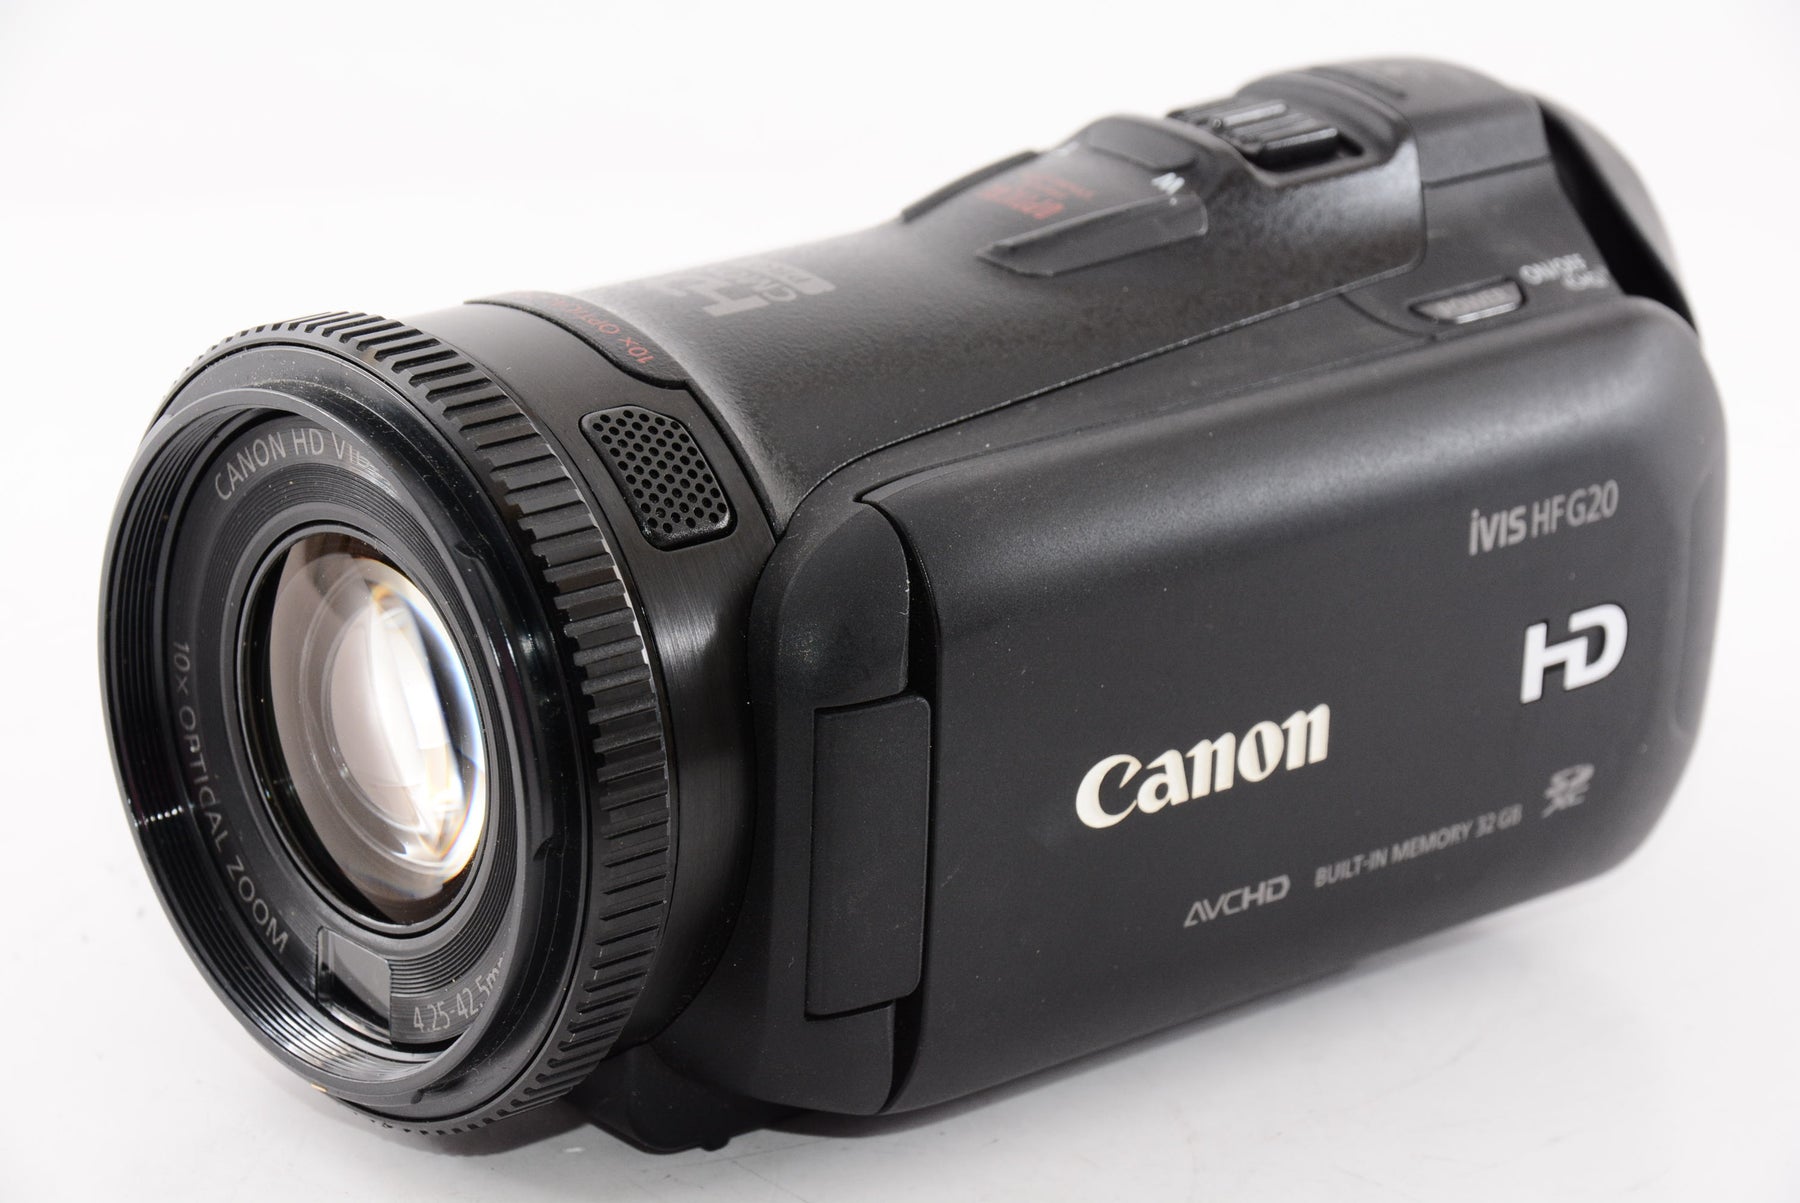 Canonのデジタルビデオカメラ - デジタルカメラ